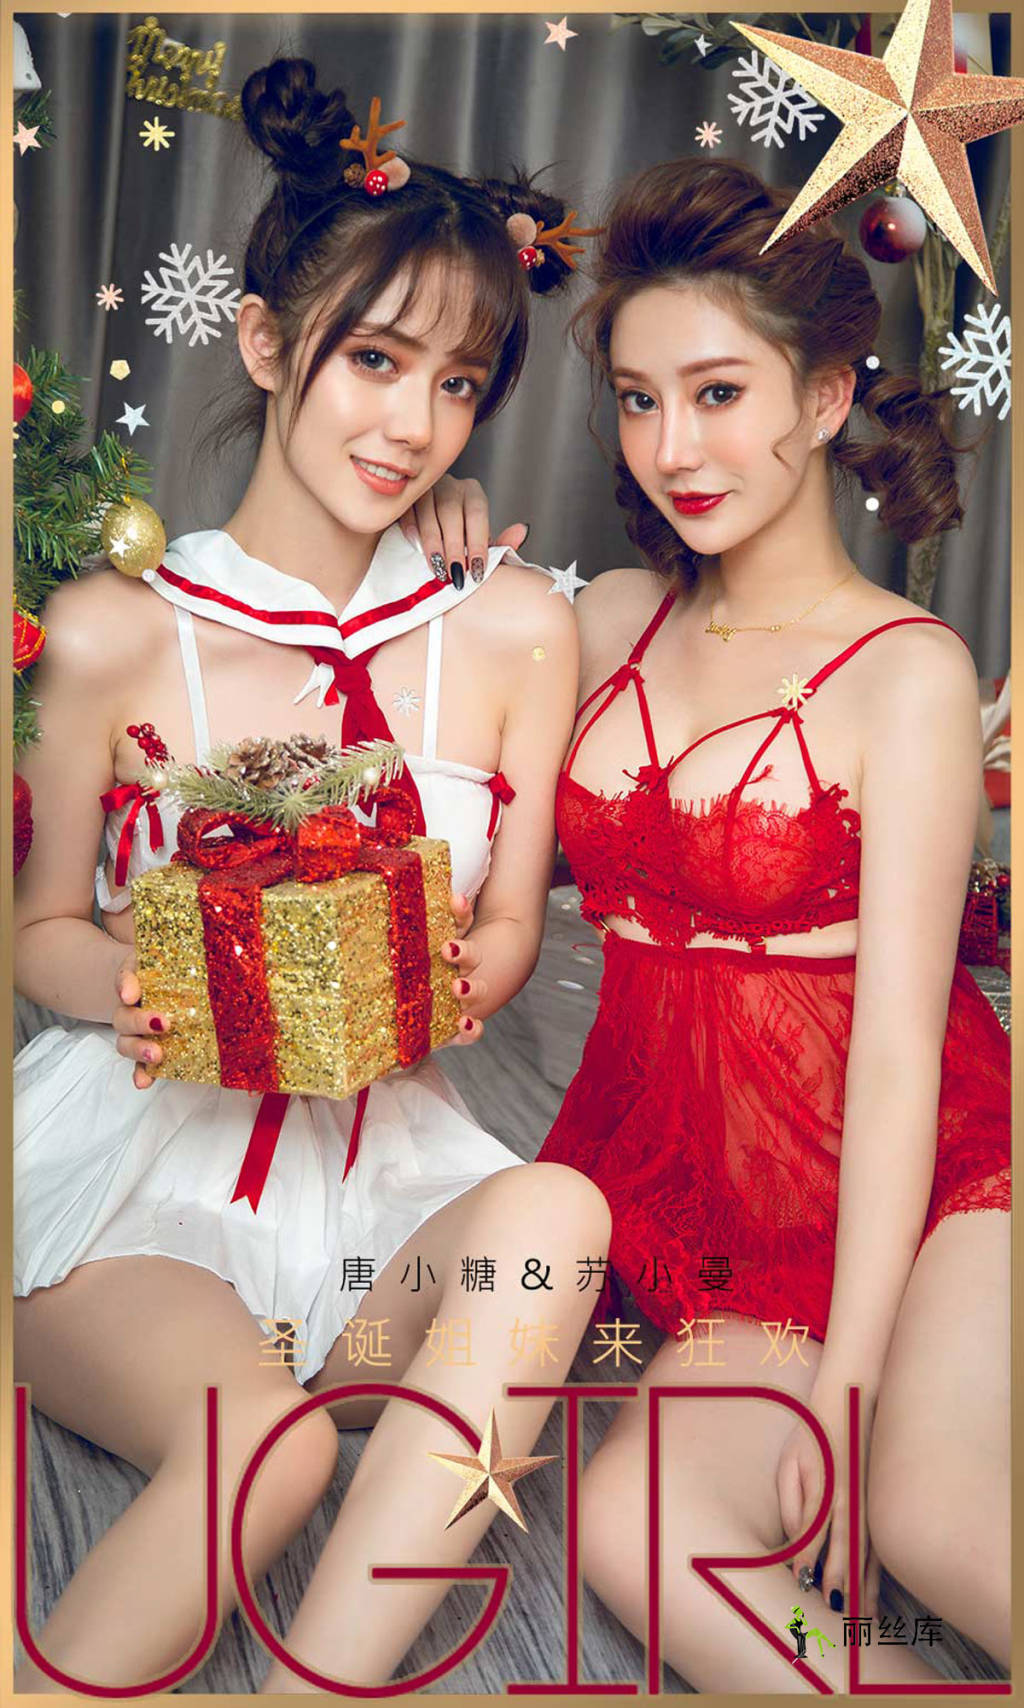 爱尤物UGirlsAPP 2019.12.25 No.1680 圣诞狂欢 苏小曼&唐小糖_丽丝库